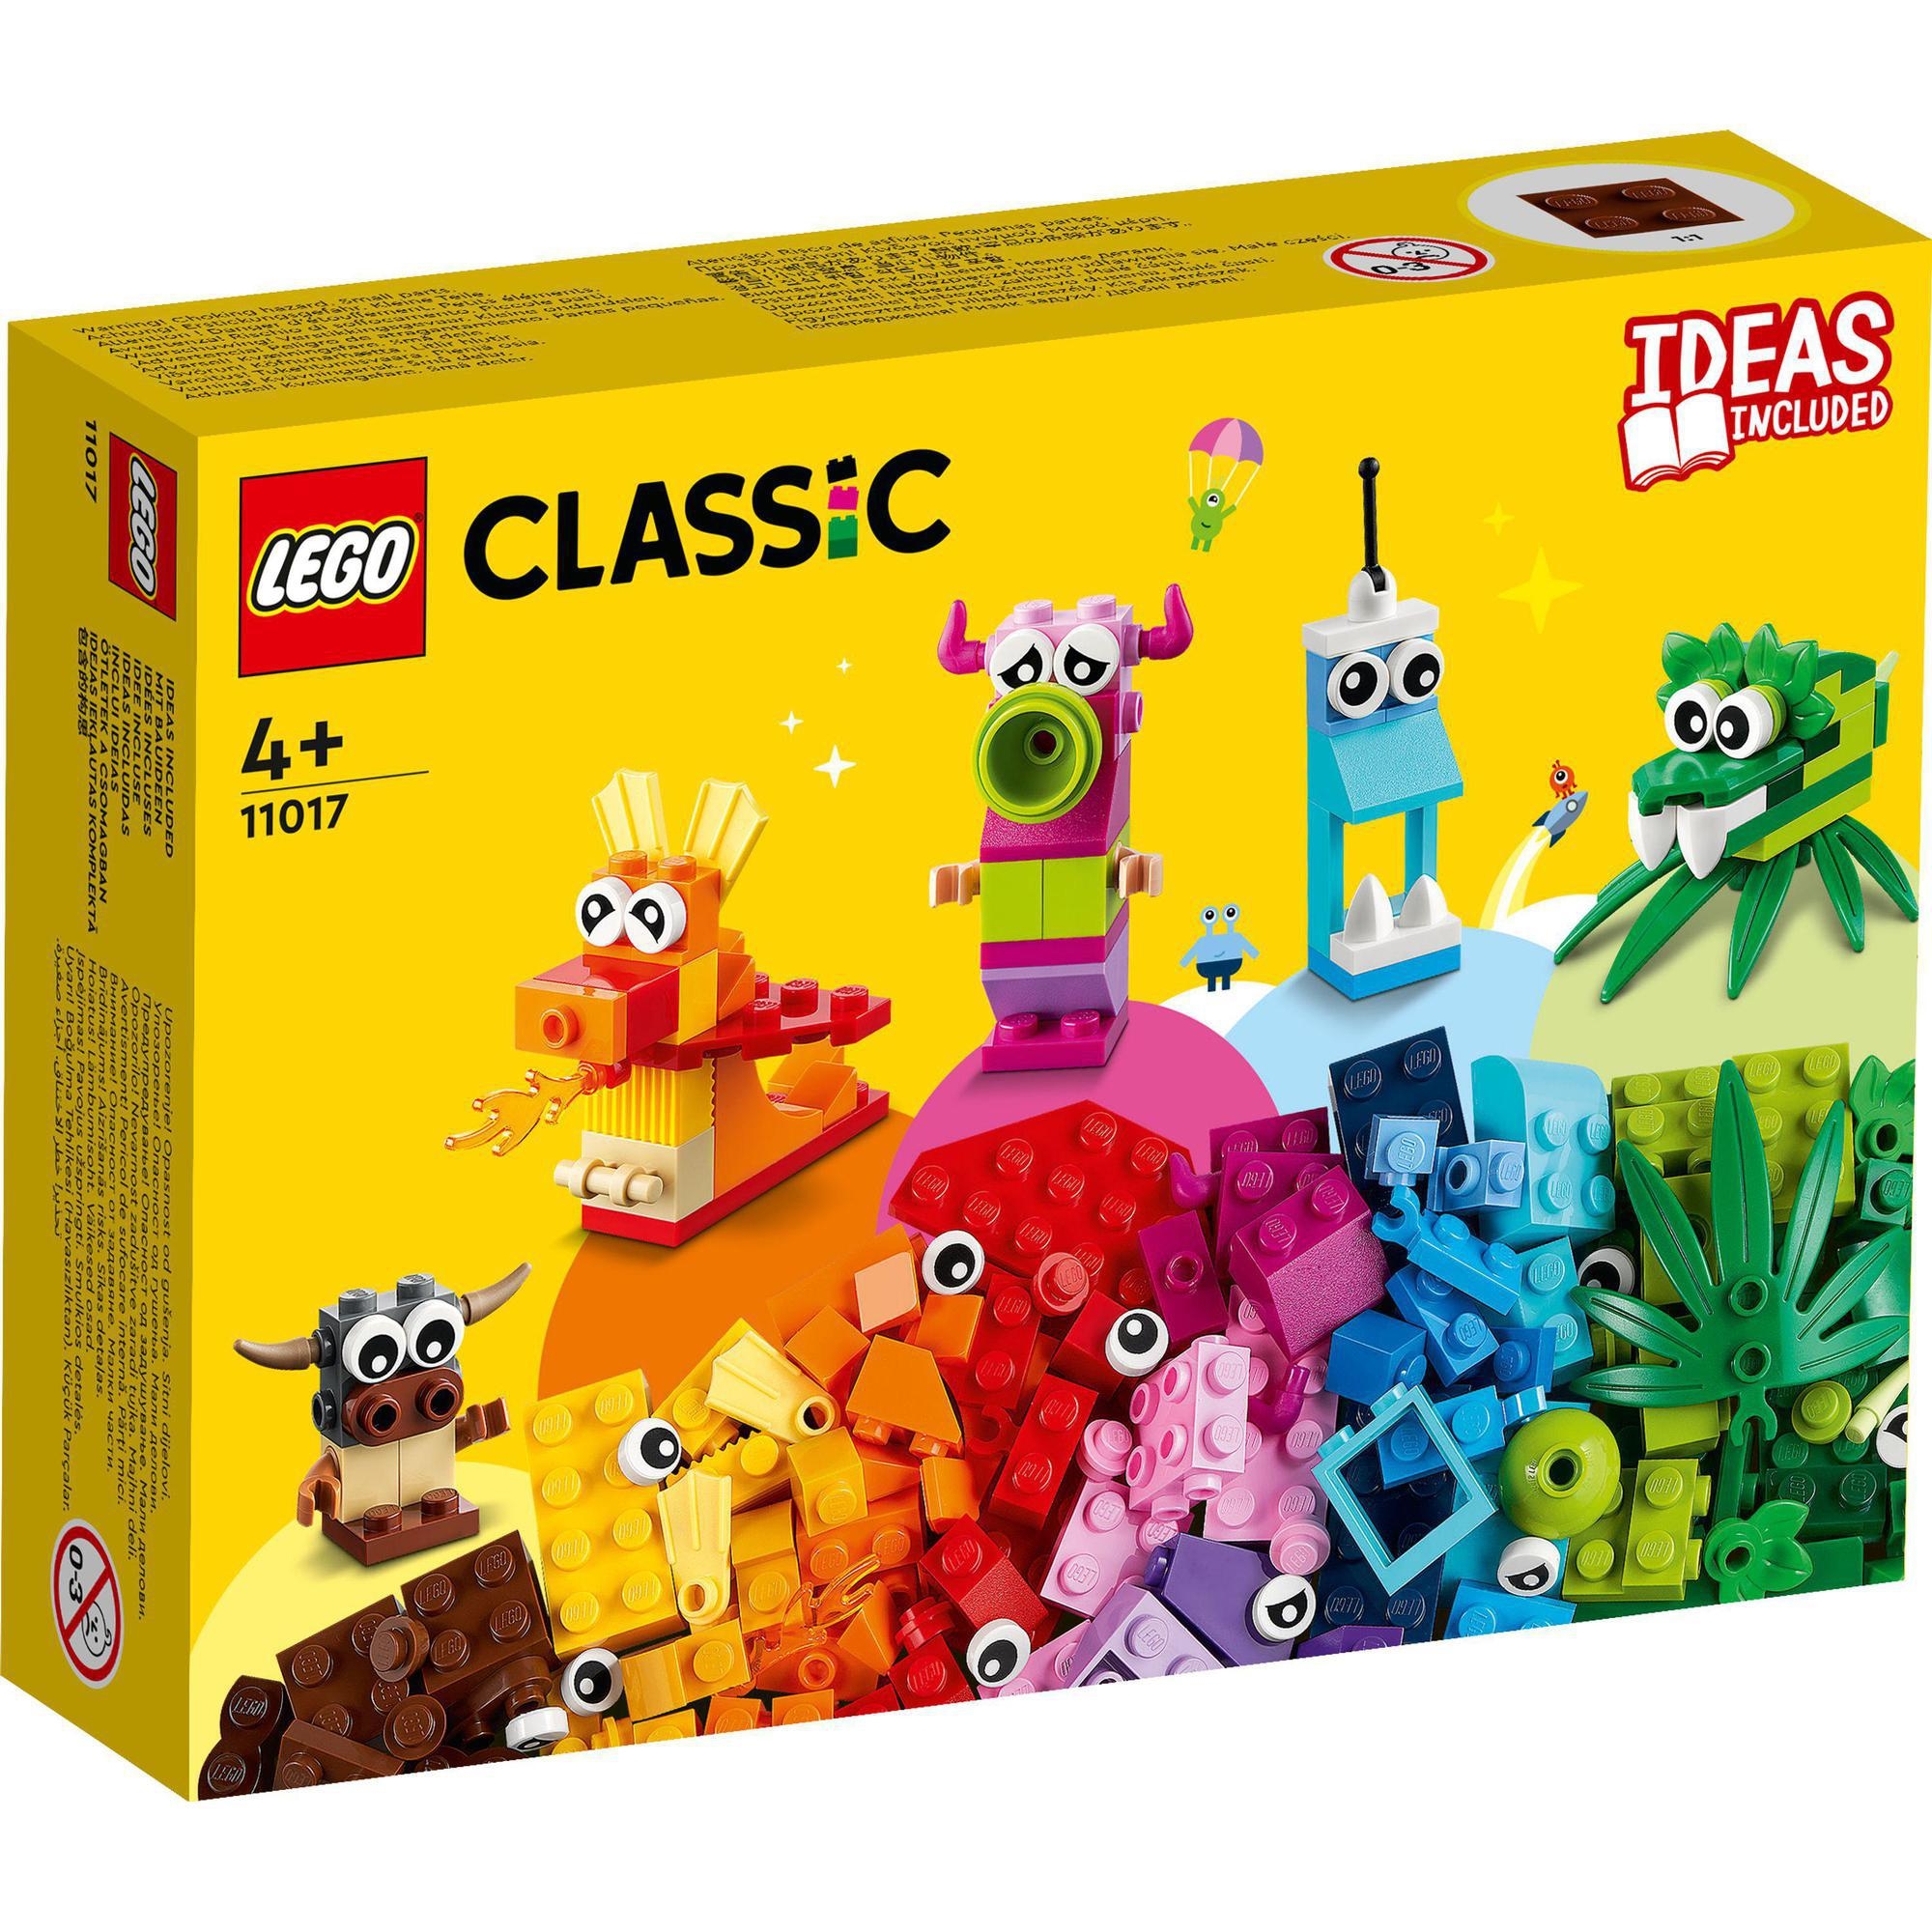 LEGO Classic 11017 Hộp gạch Classic chủ đề quái vật sáng tạo (140 chi tiết)